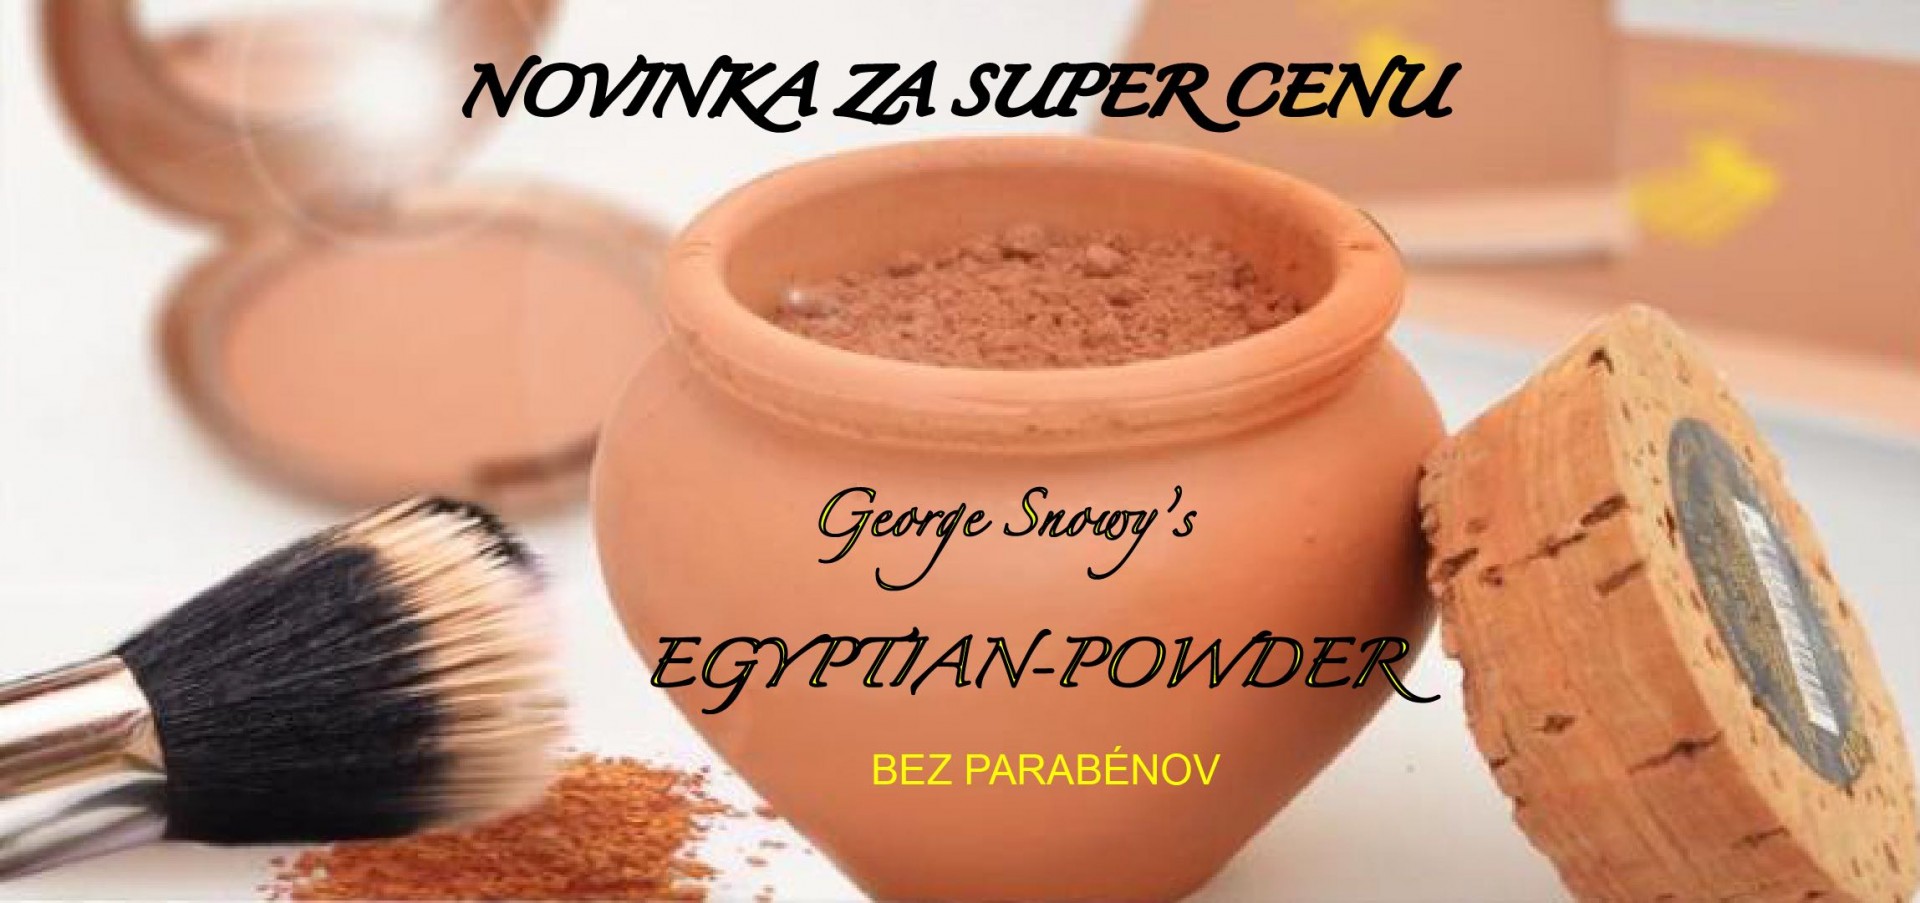 Egyptska hlinka Egypt Powder, sypky puder hnedy